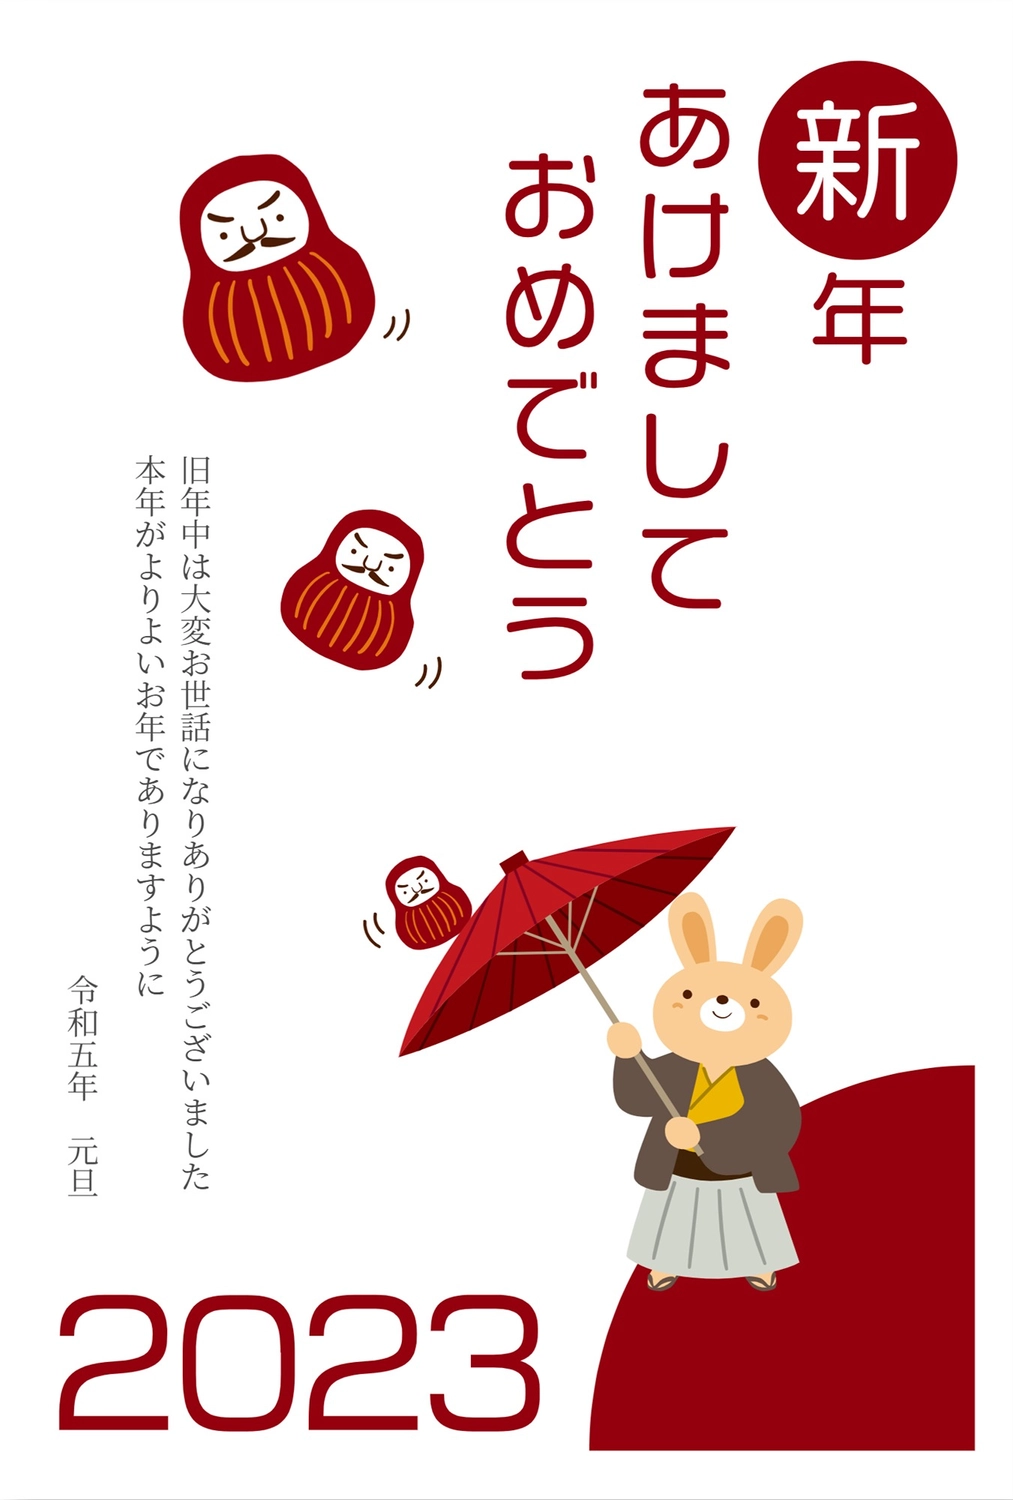 傘回しをするうさぎの年賀状, New Year's card, concord, umbrella maker, New Year Card template